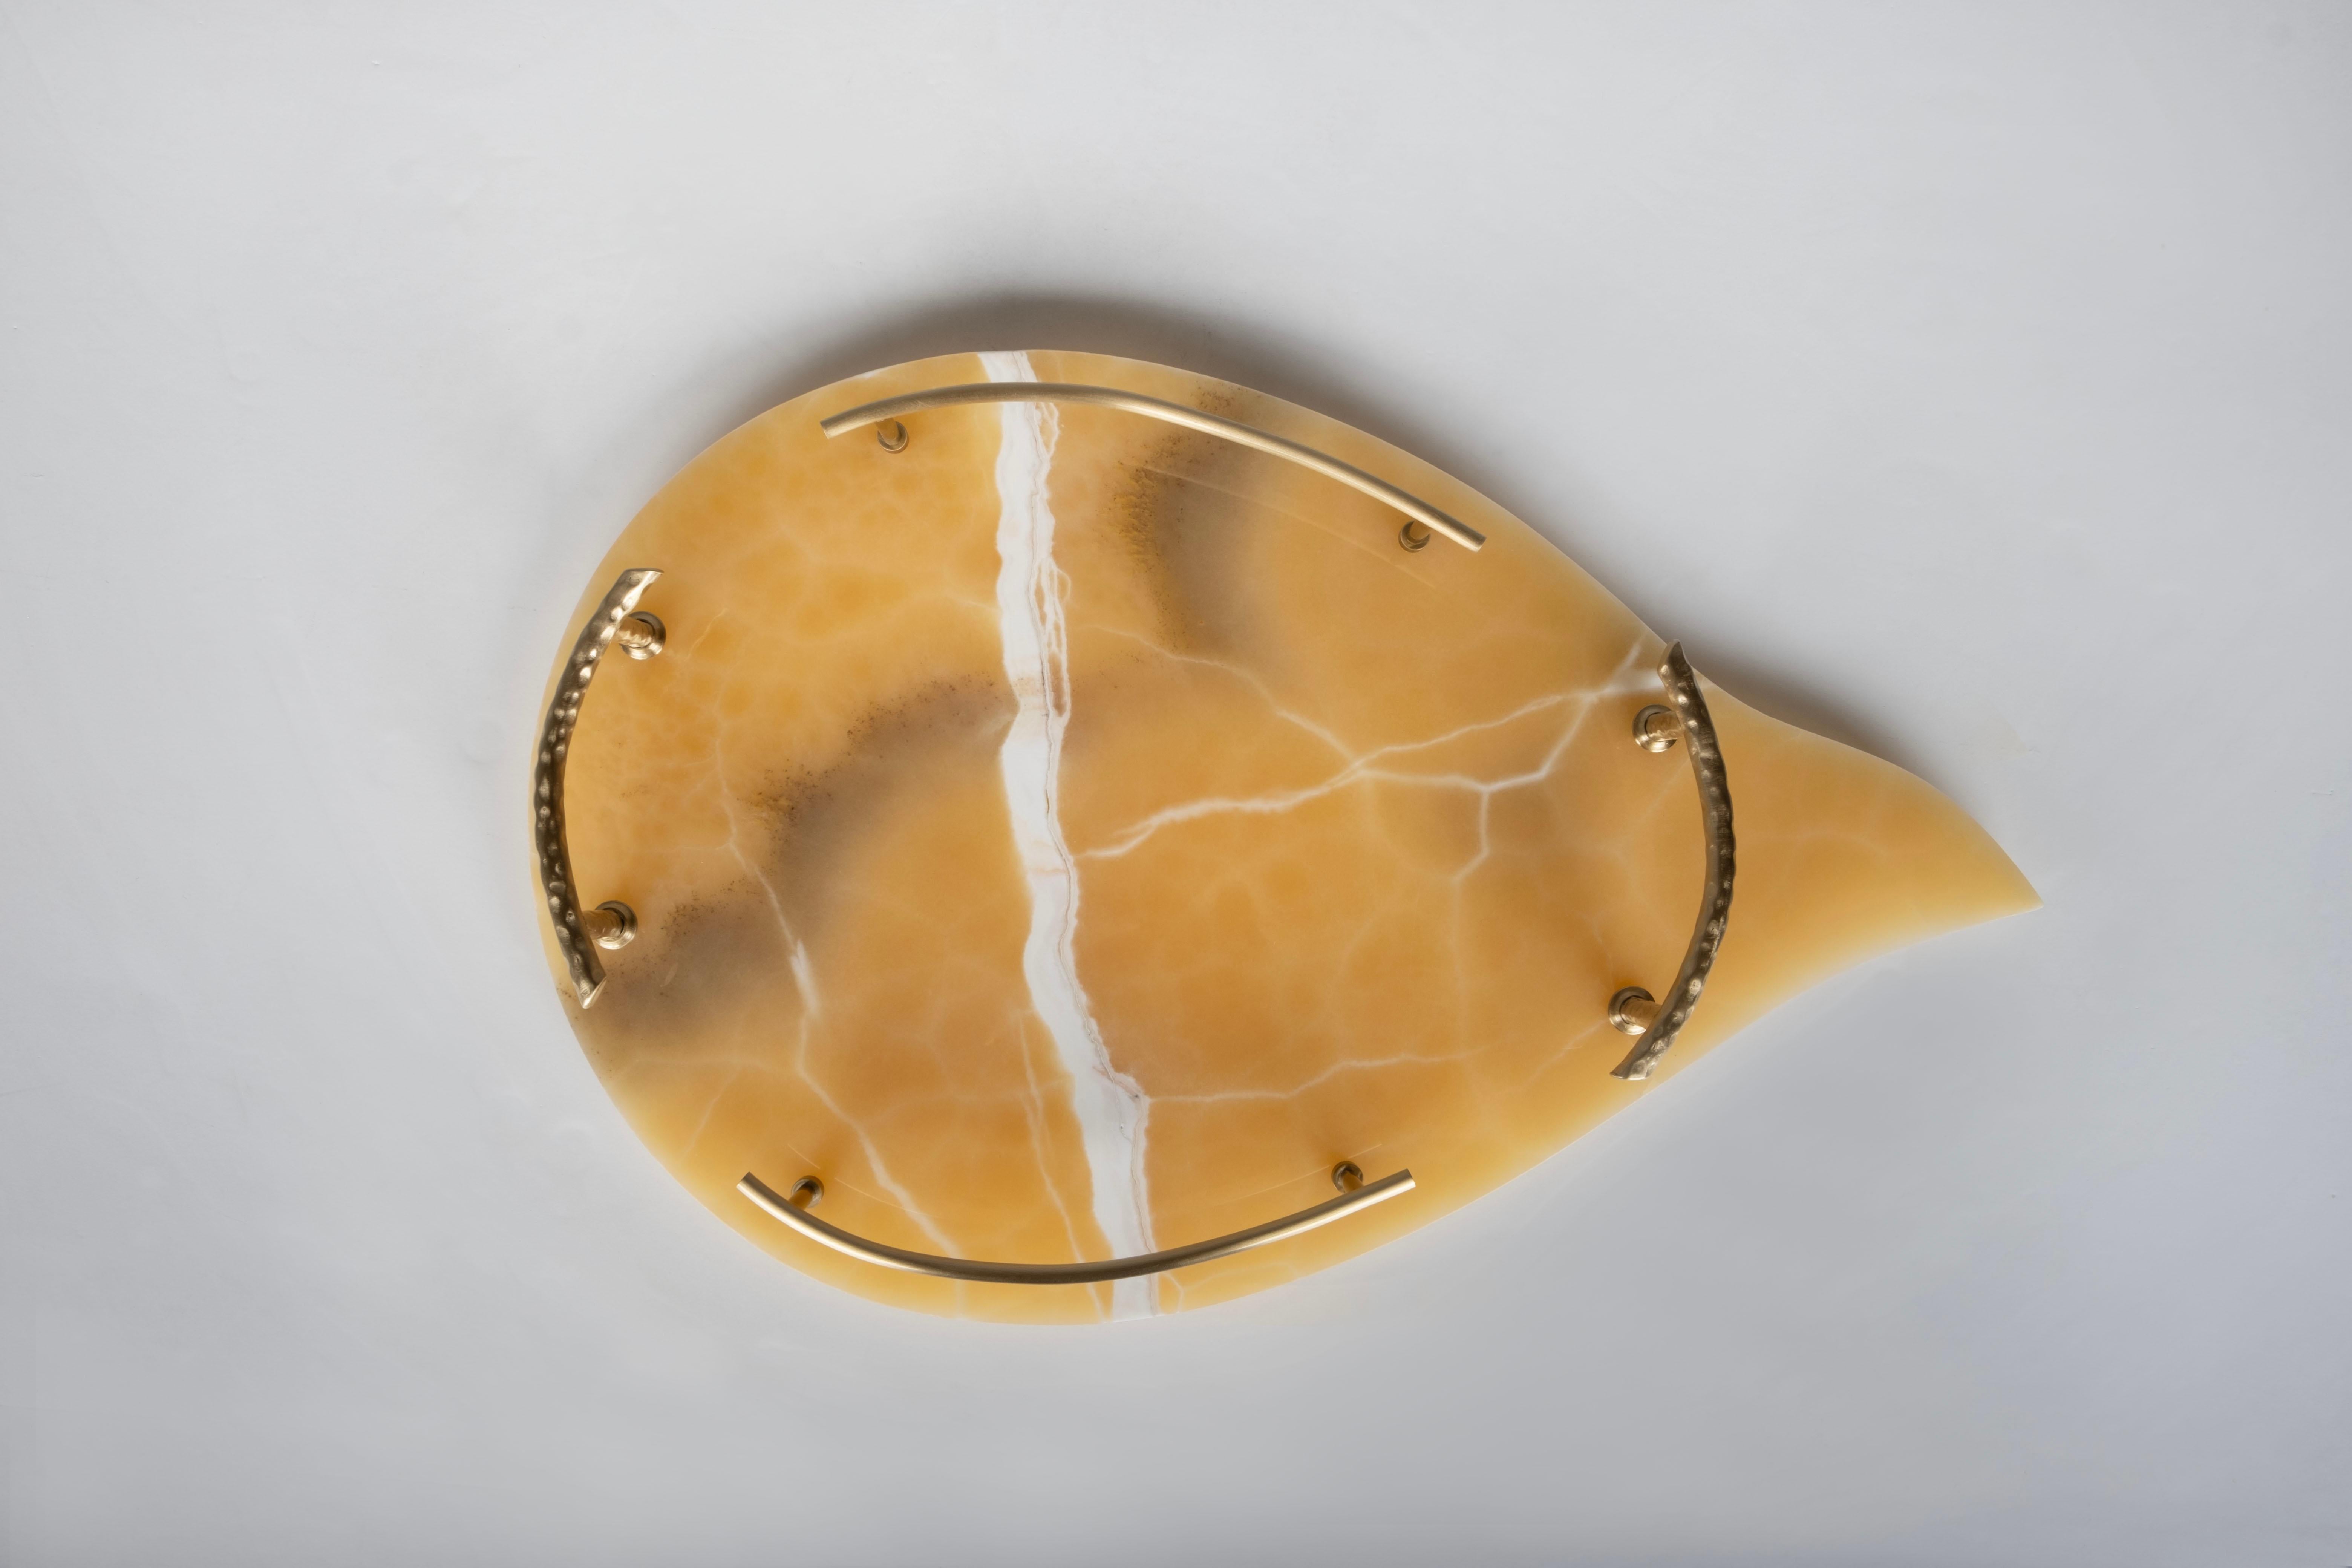 Serviertablett Sakai, Lusitanus Home Collection, Handgefertigt in Portugal - Europa von Lusitanus Home.

Sakai ist ein erhabenes Serviertablett, das zum Verweilen einlädt. Sakai ist ein organisch geformtes Serviertablett aus orangefarbenem